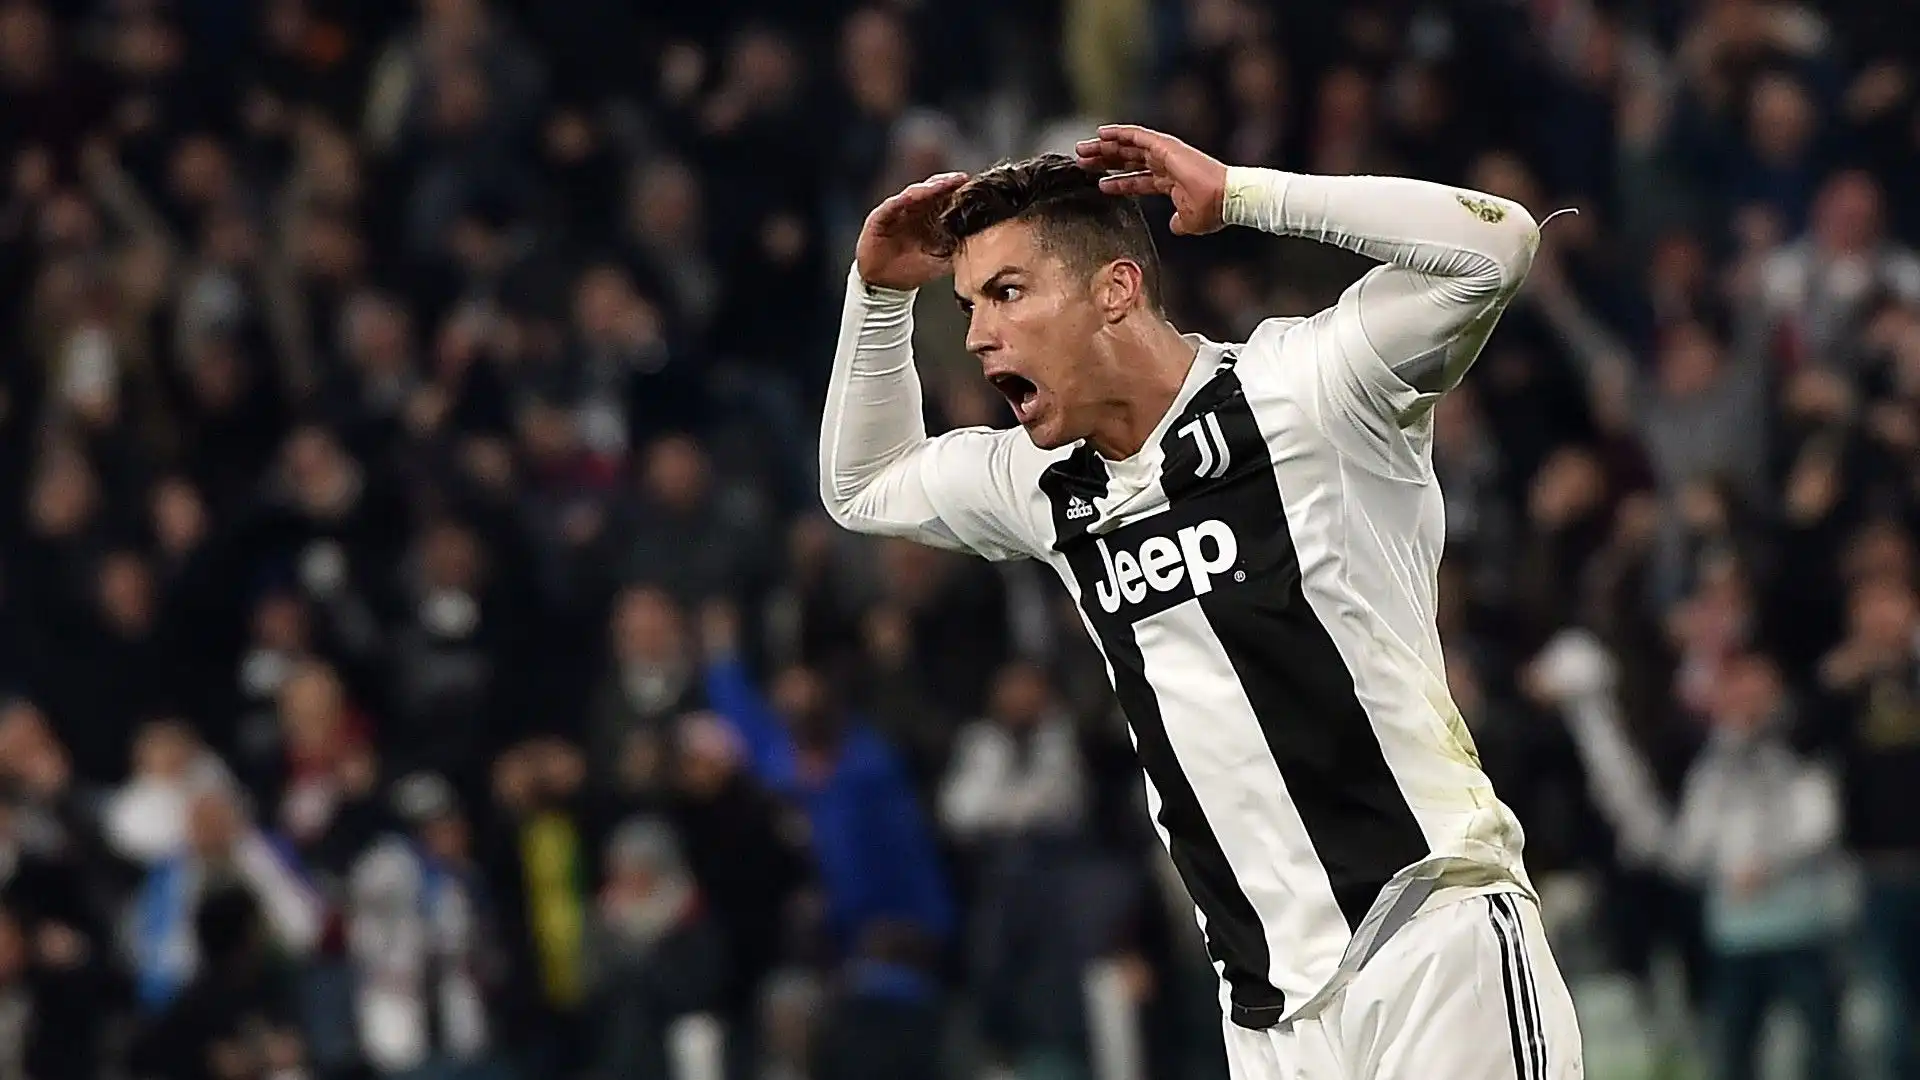 Molto probabilmente la migliore partita di Ronaldo alla Juventus: tre gol (27', 49', 86') che hanno permesso alla squadra bianconera di andare agli ottavi di finale di Champions League